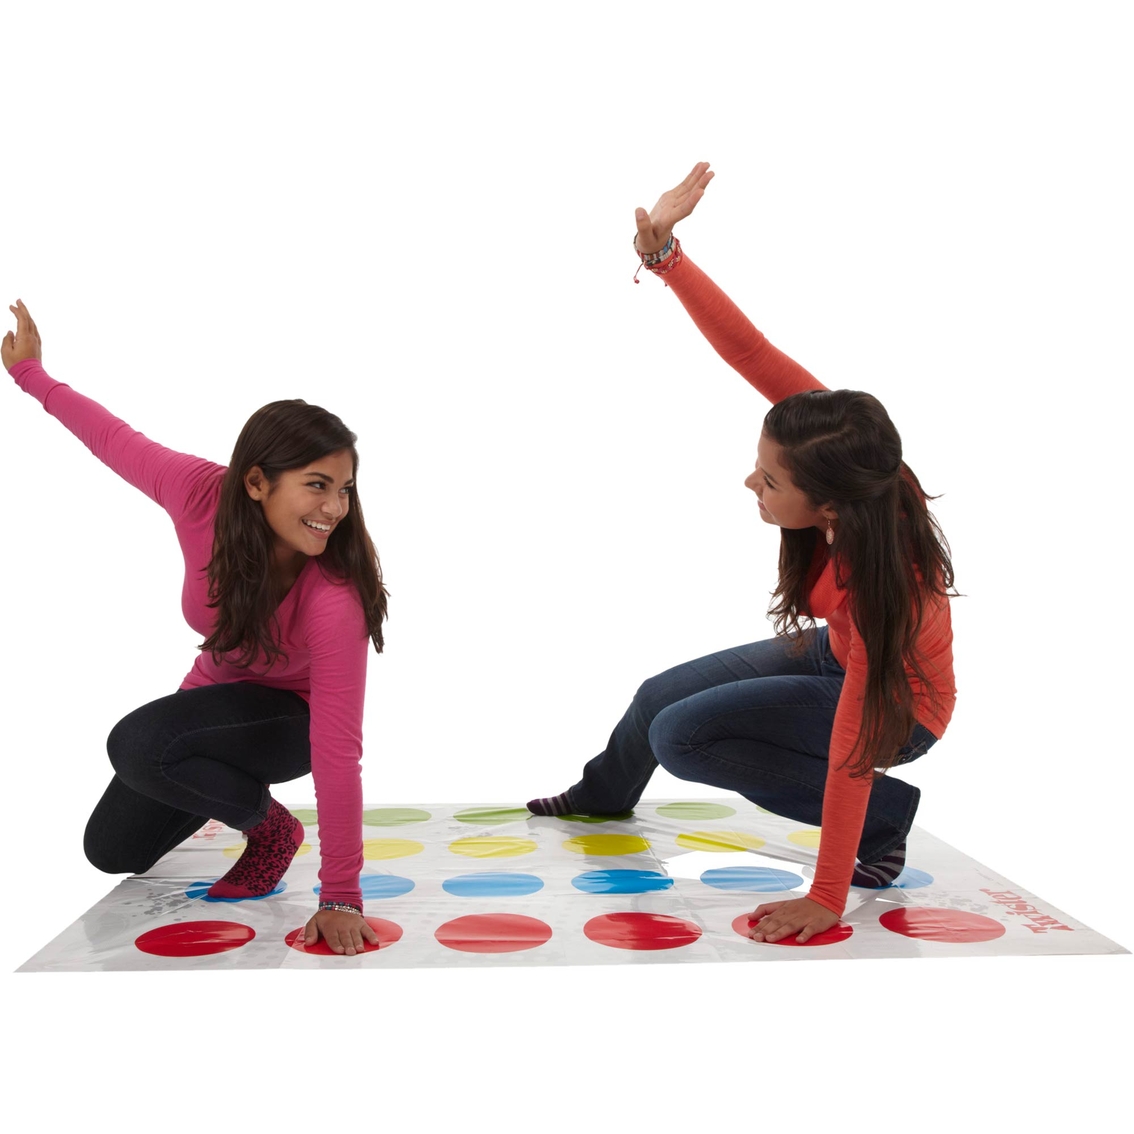 Hasbro Twister Board Game - Image 3 of 3